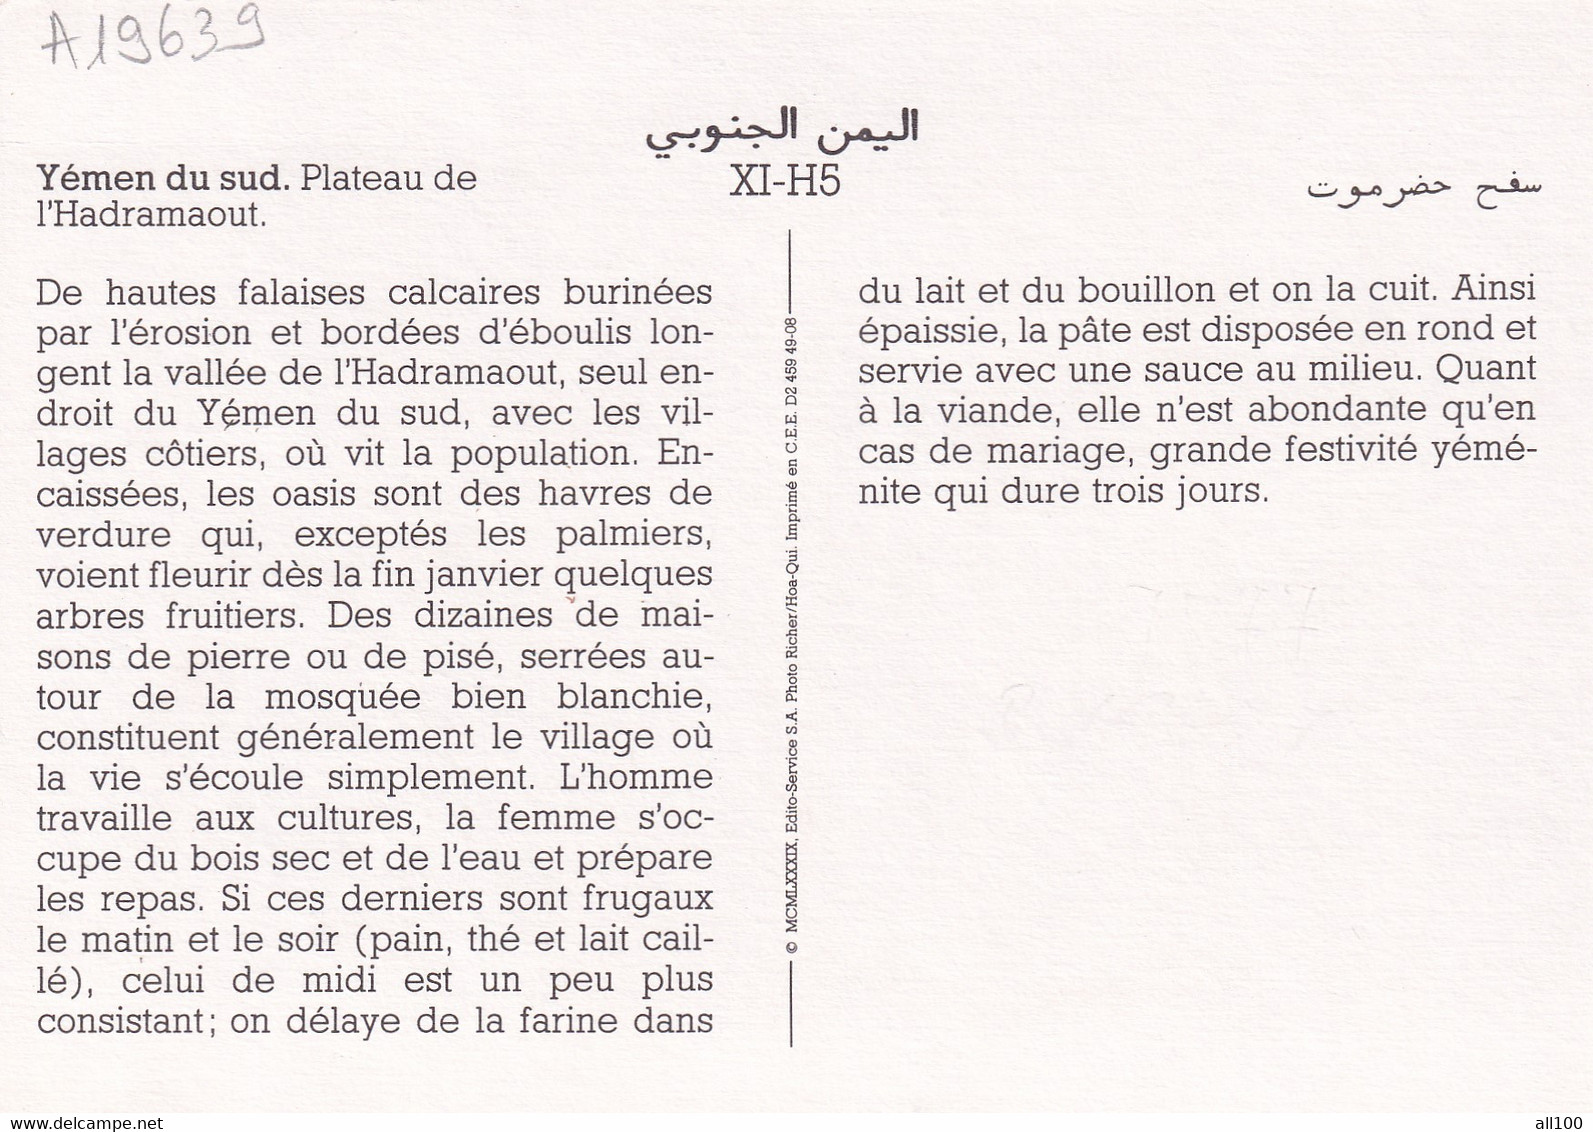 A19639 - YEMEN DU SUD PLATEAU DE L'HADRAMAOUT SOUTH YEMEN POST CARD UNUSED PHOTO RICHER HOA QUI IMPRIME EN CEE - Yémen